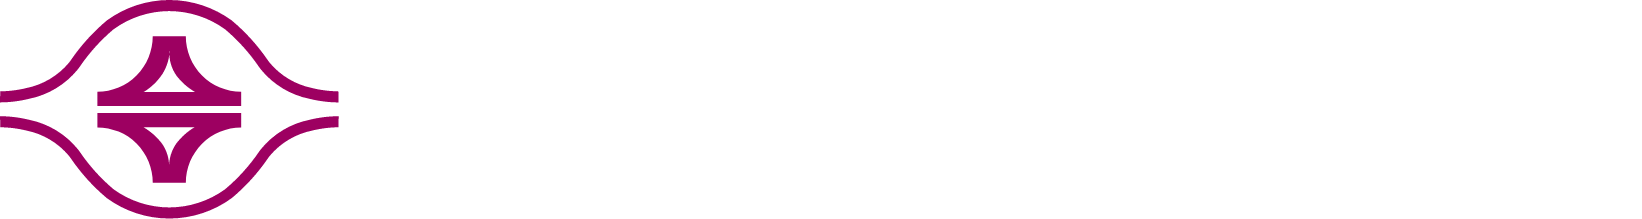 Formosa Plastics logo grand pour les fonds sombres (PNG transparent)